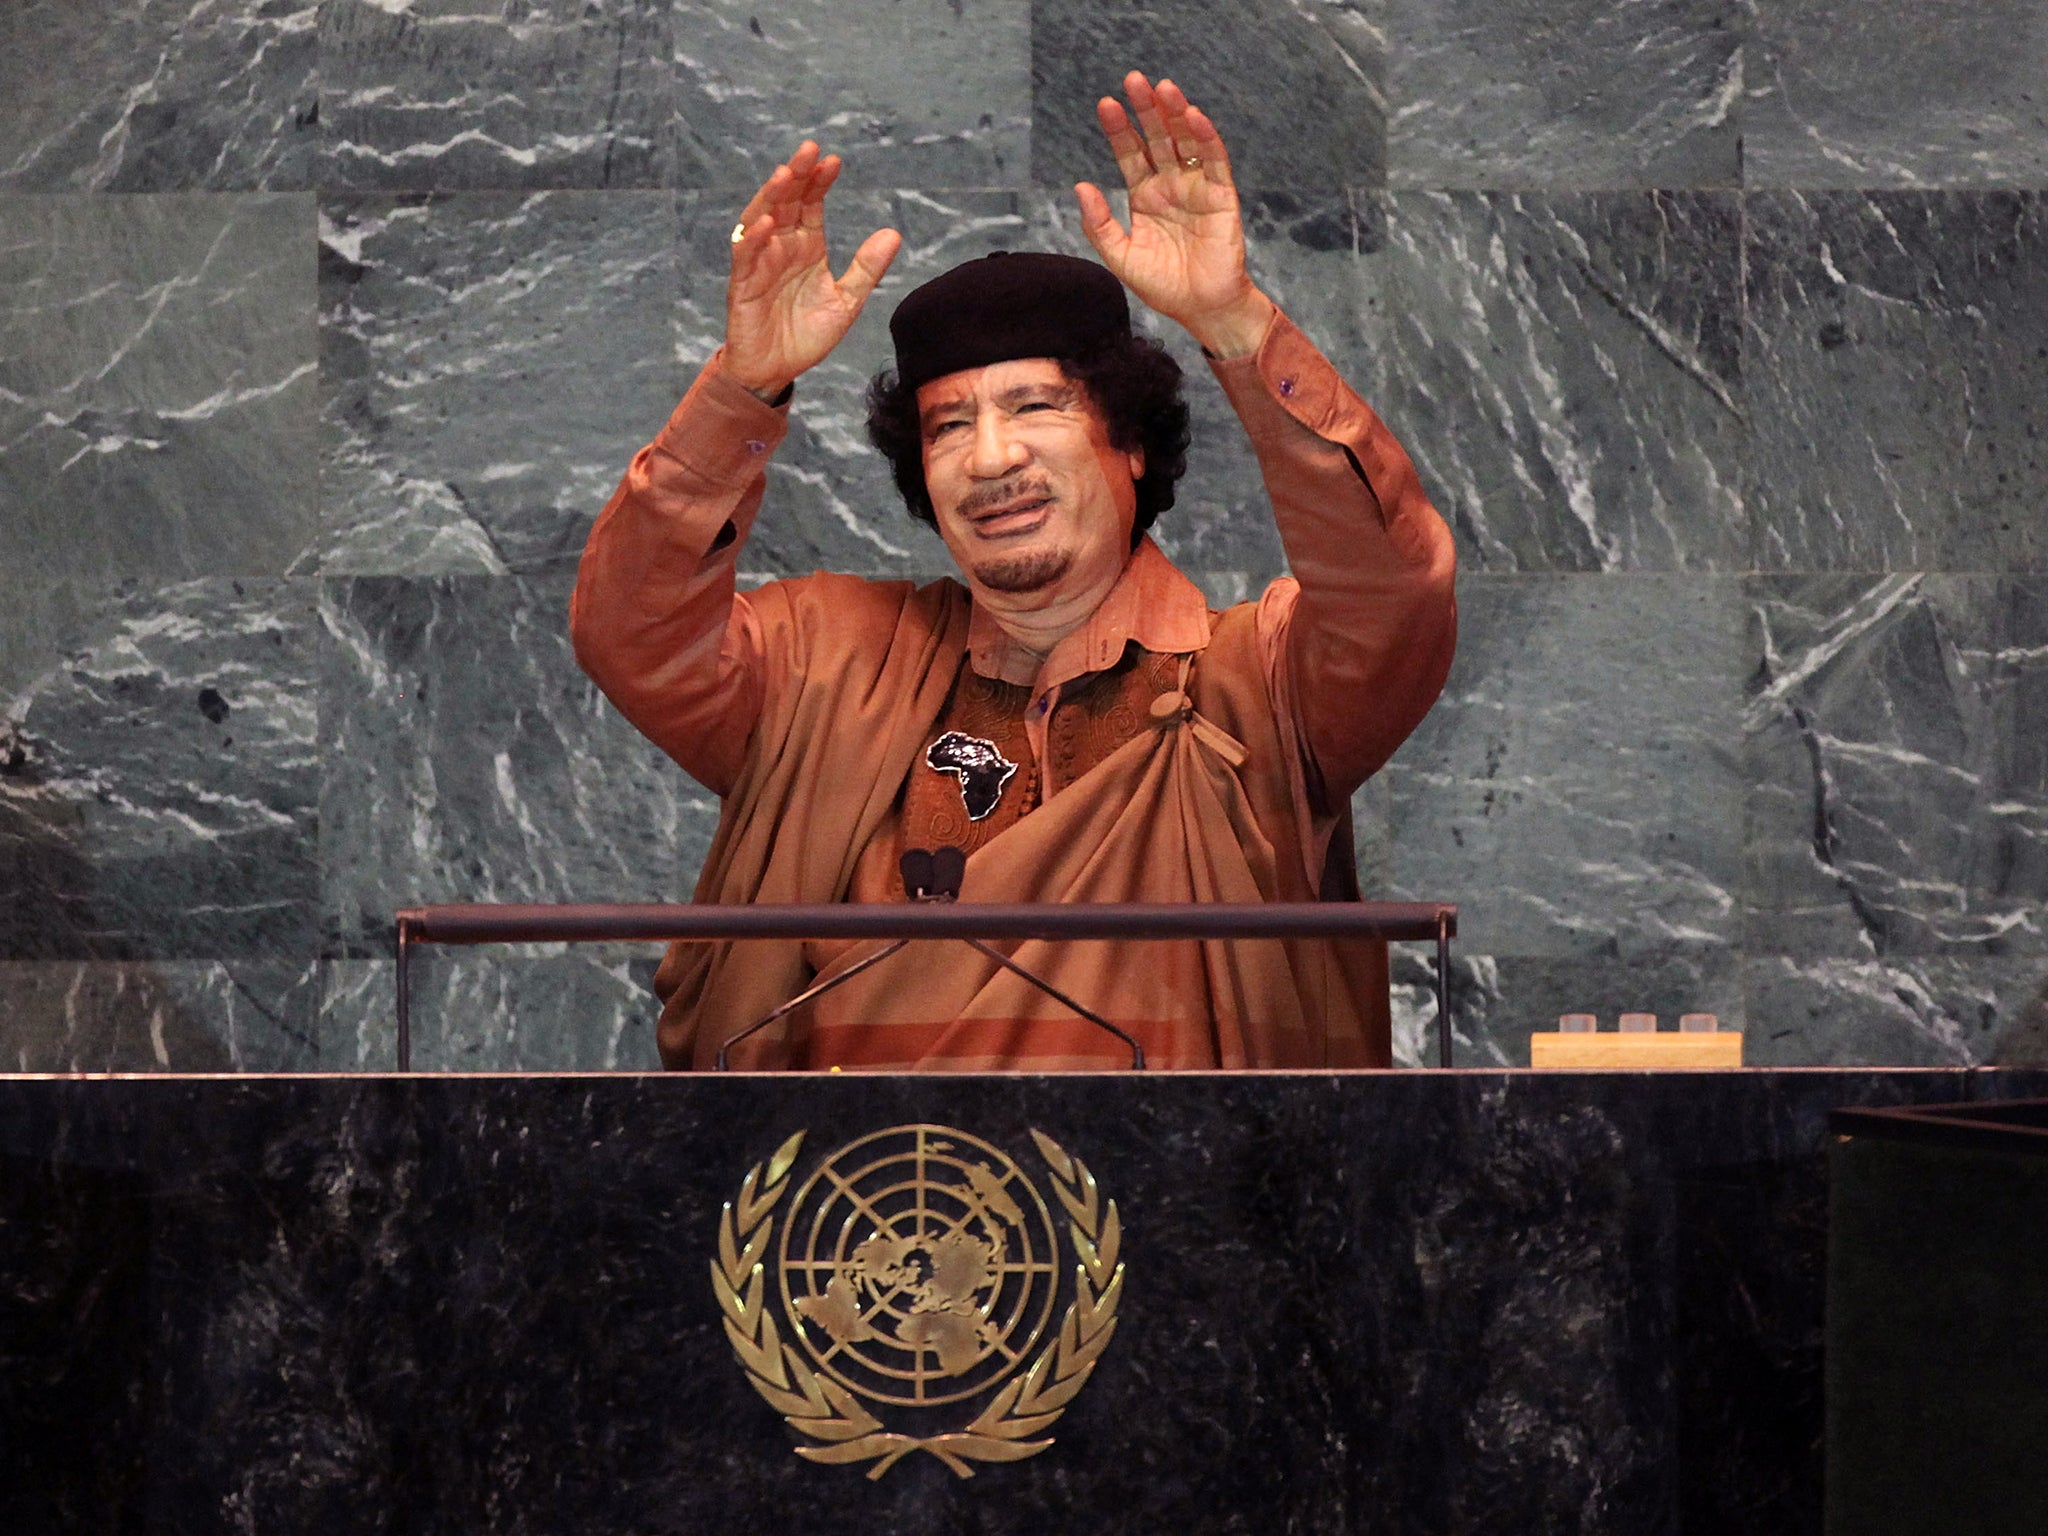 libya has been under an UN arms embargo since 2011 when Muammar Gaddafi was overthrown